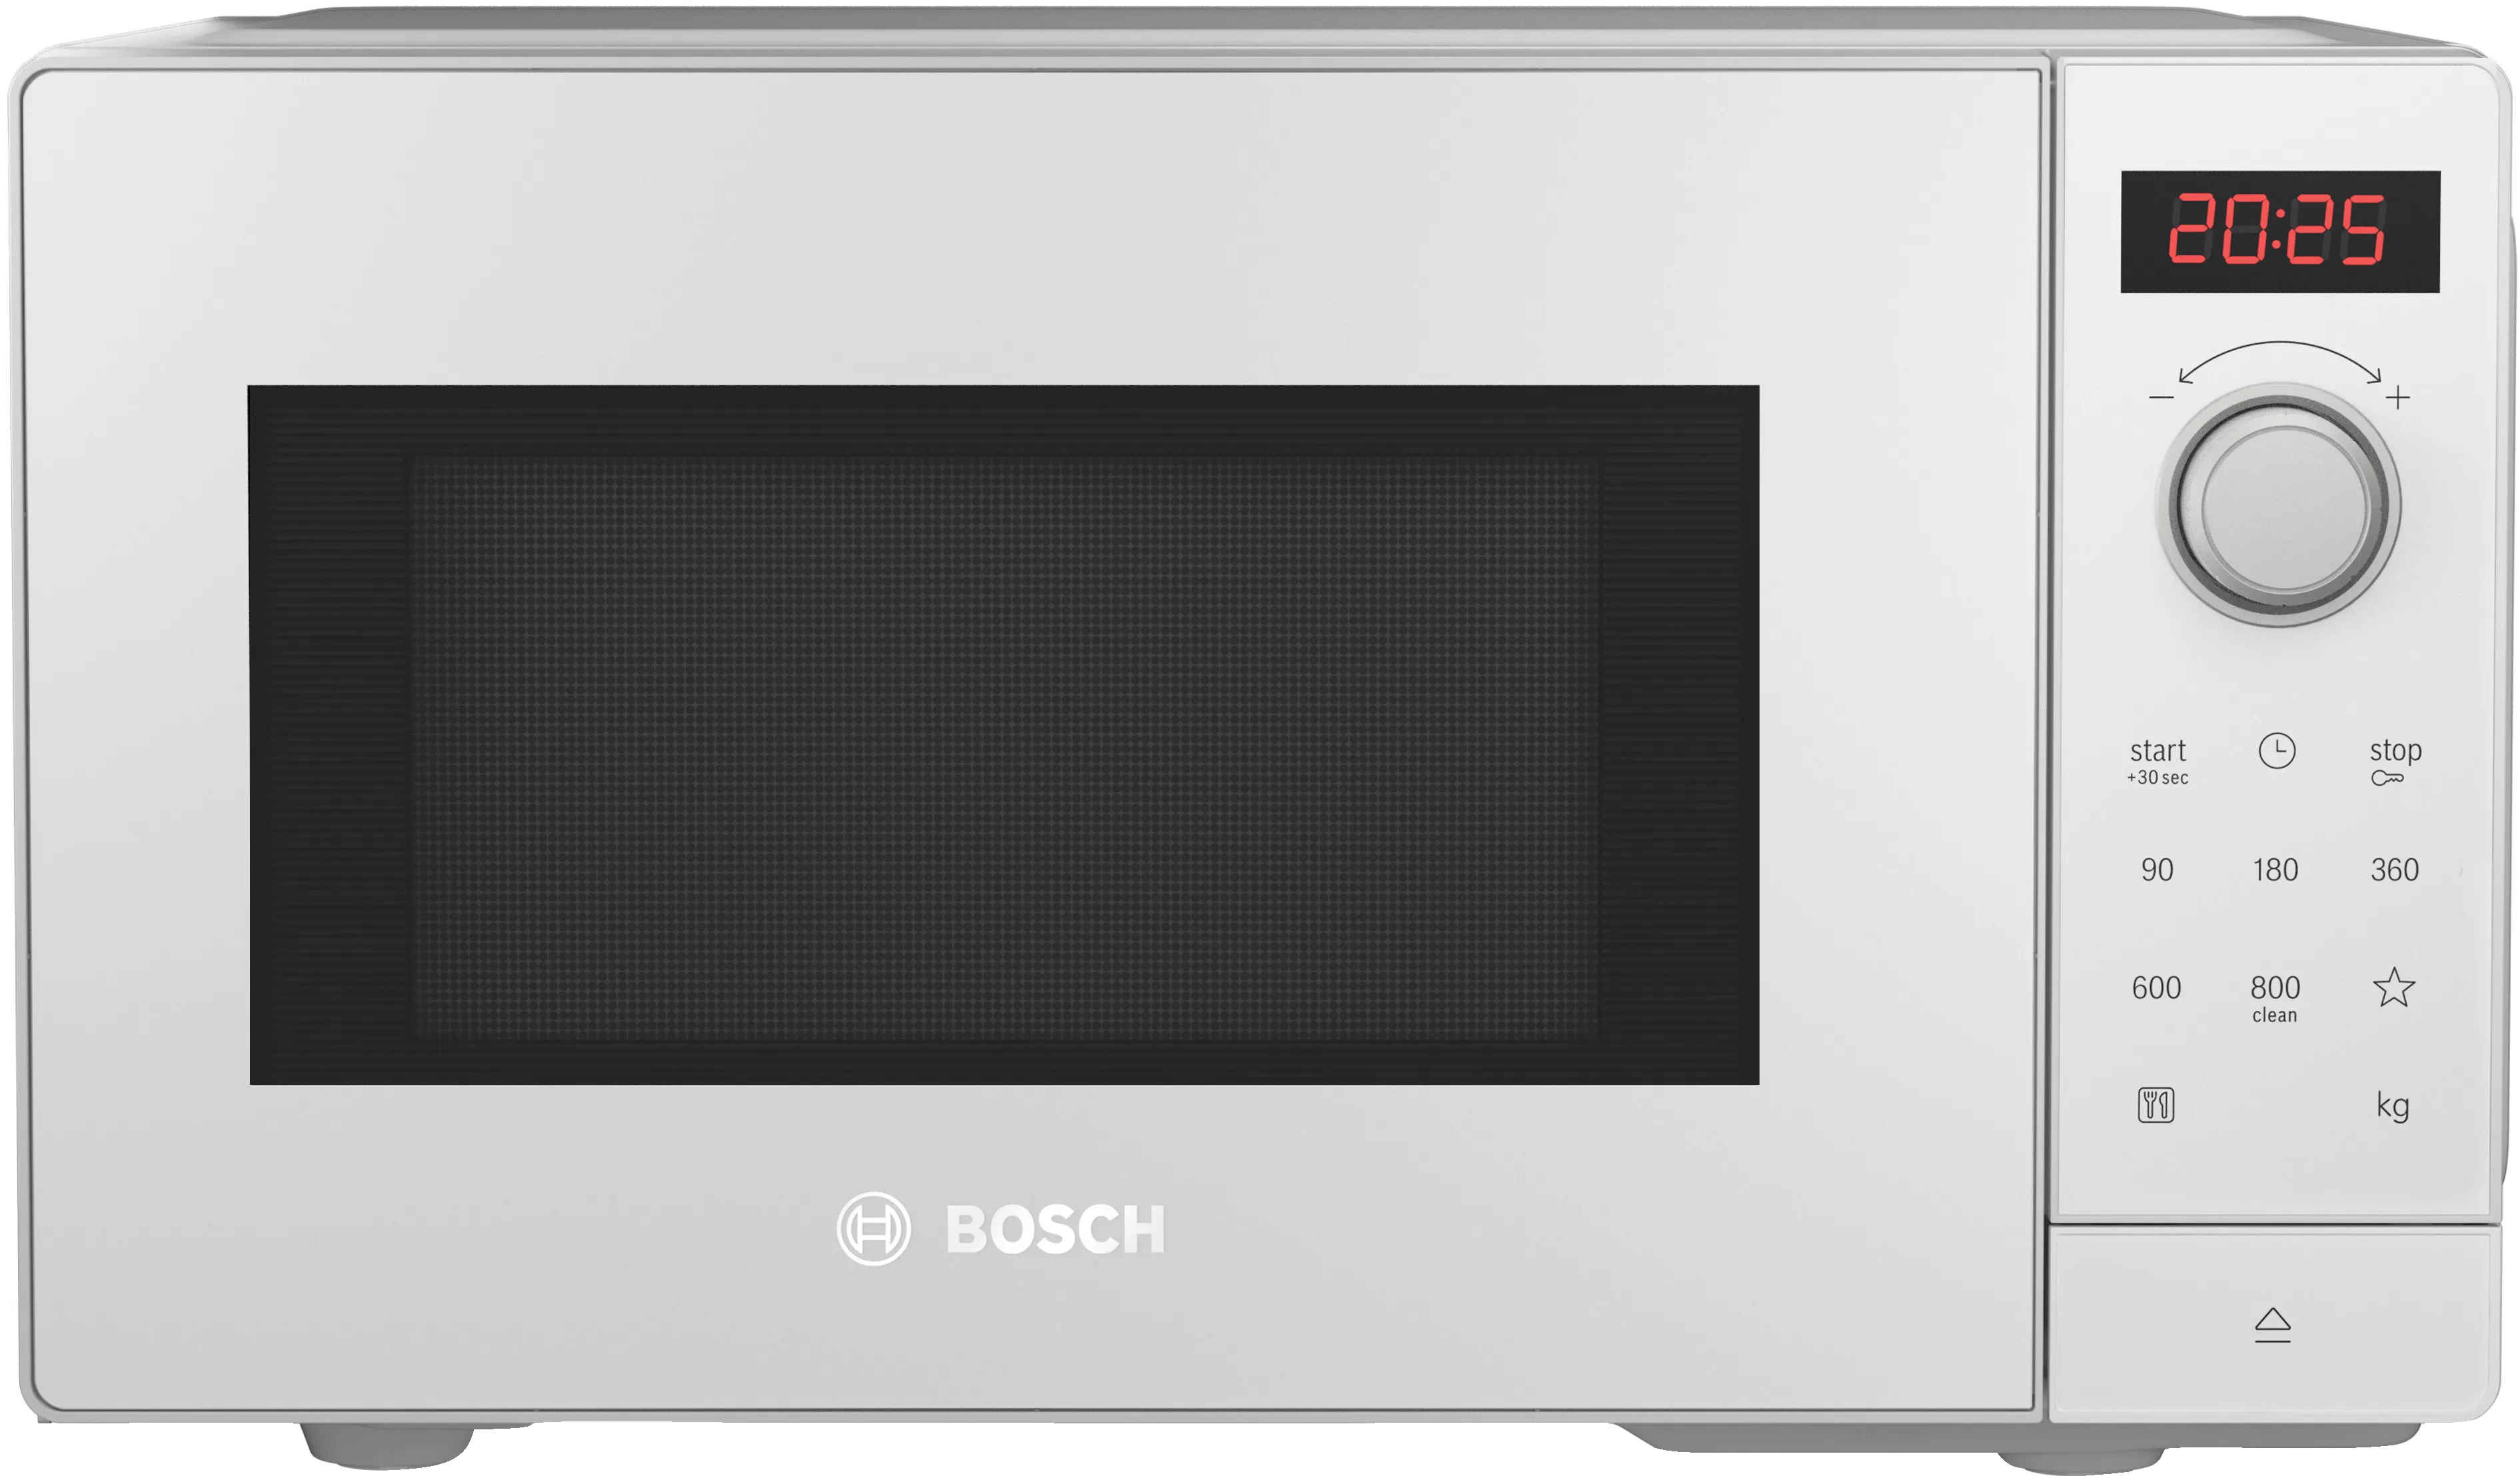 Microondas Bosch FEL023MS2 | 20L | 800W | 1000W Grill | Antihuellas |  Negro-Inox | Serie 2